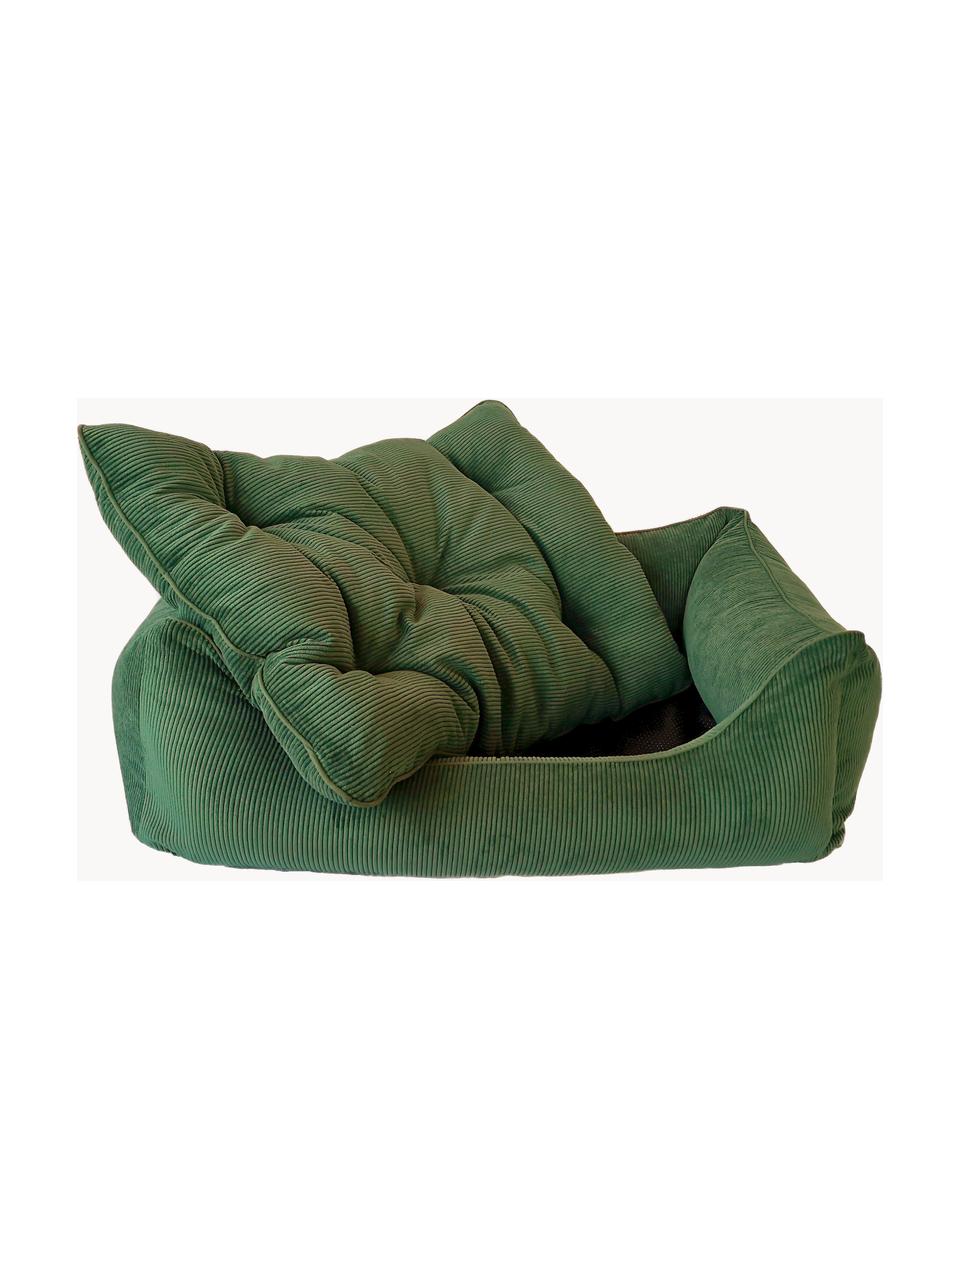 Cord-Hundebett Relax, verschiedene Grössen, Bezug: Cord (100 % Polyester) De, Dunkelgrün, B 90 x T 60 cm